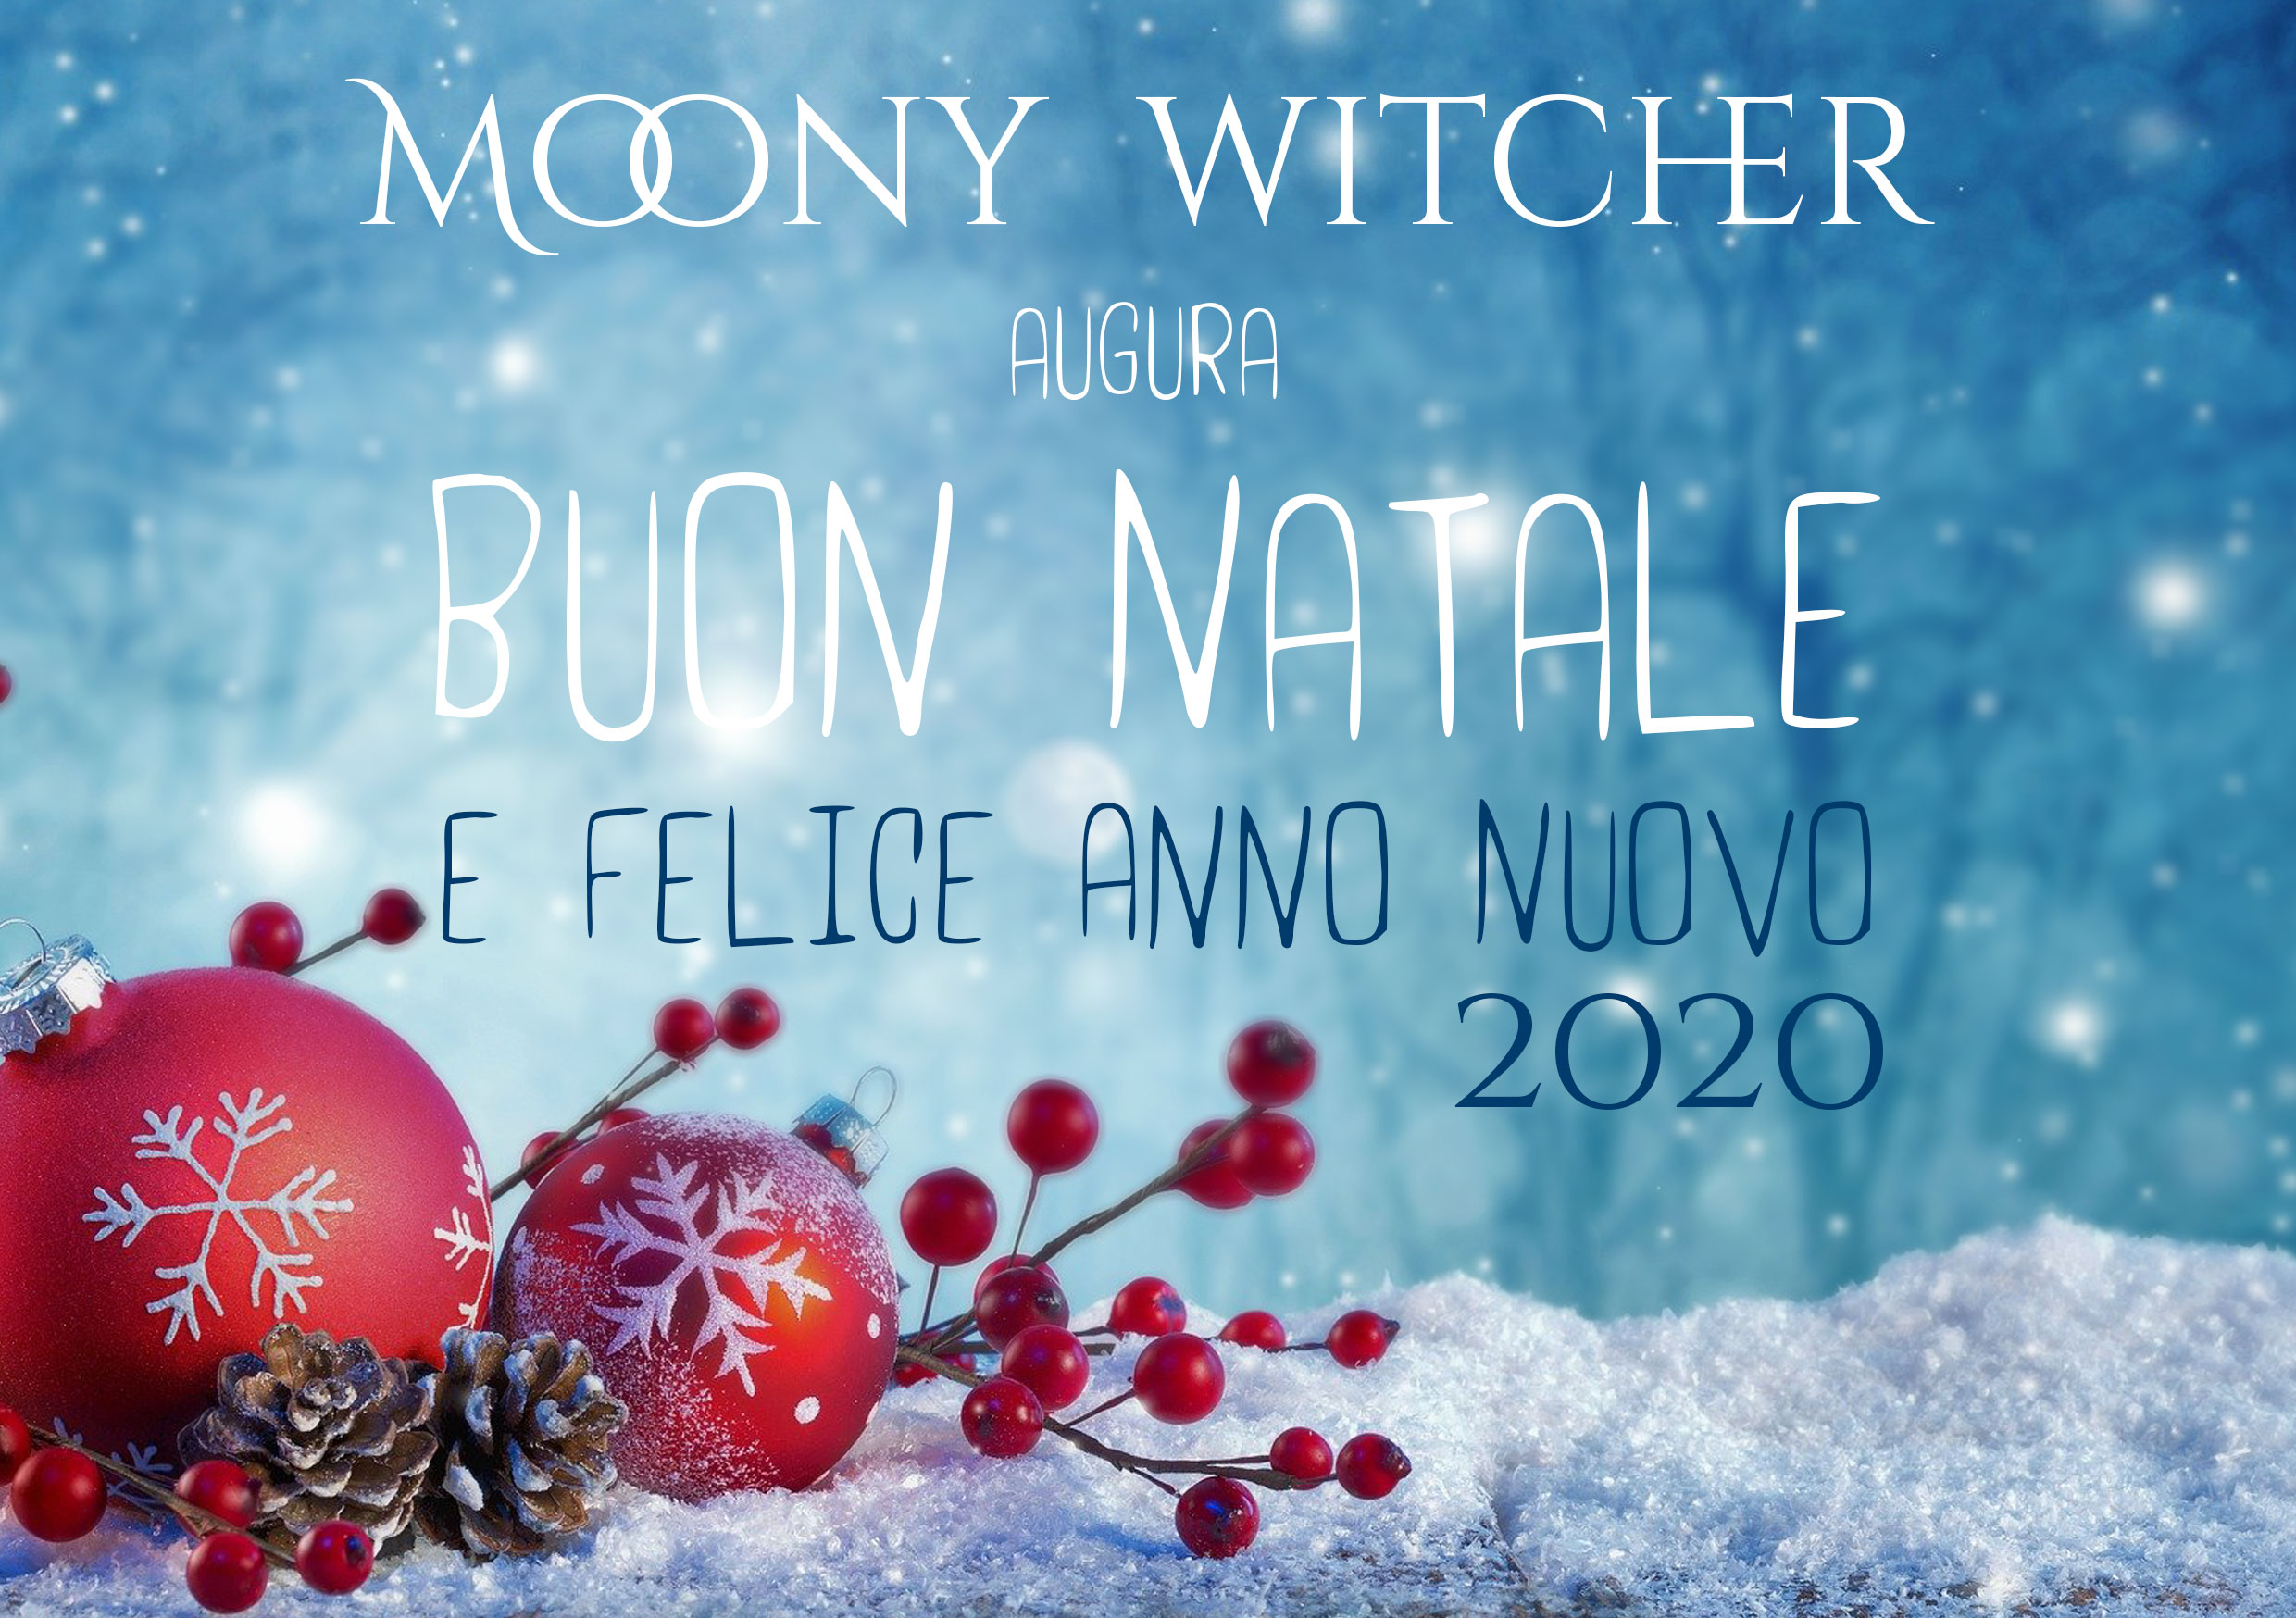 Buon Natale E Sereno Anno Nuovo.Buon Natale E Felice Anno Nuovo 2020 Moony Witcher Il Blog